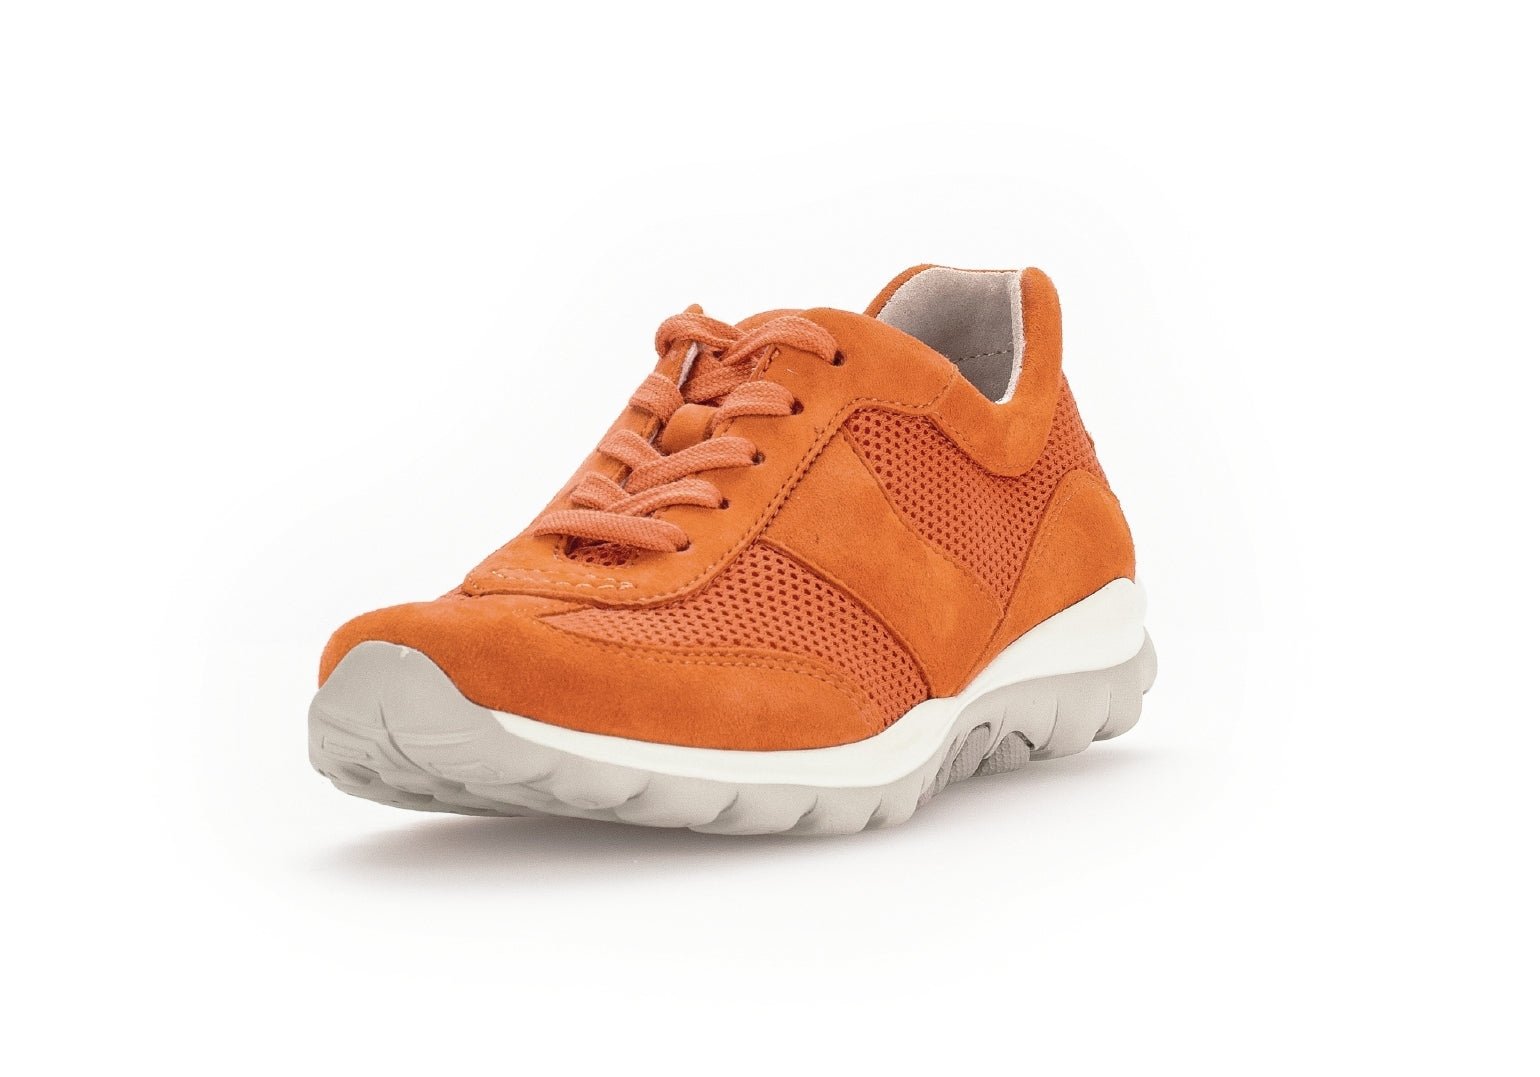 '46.966.32' women's walking rolling sneaker - Orange - Chaplinshoes'46.966.32' women's walking rolling sneaker - OrangeGabor